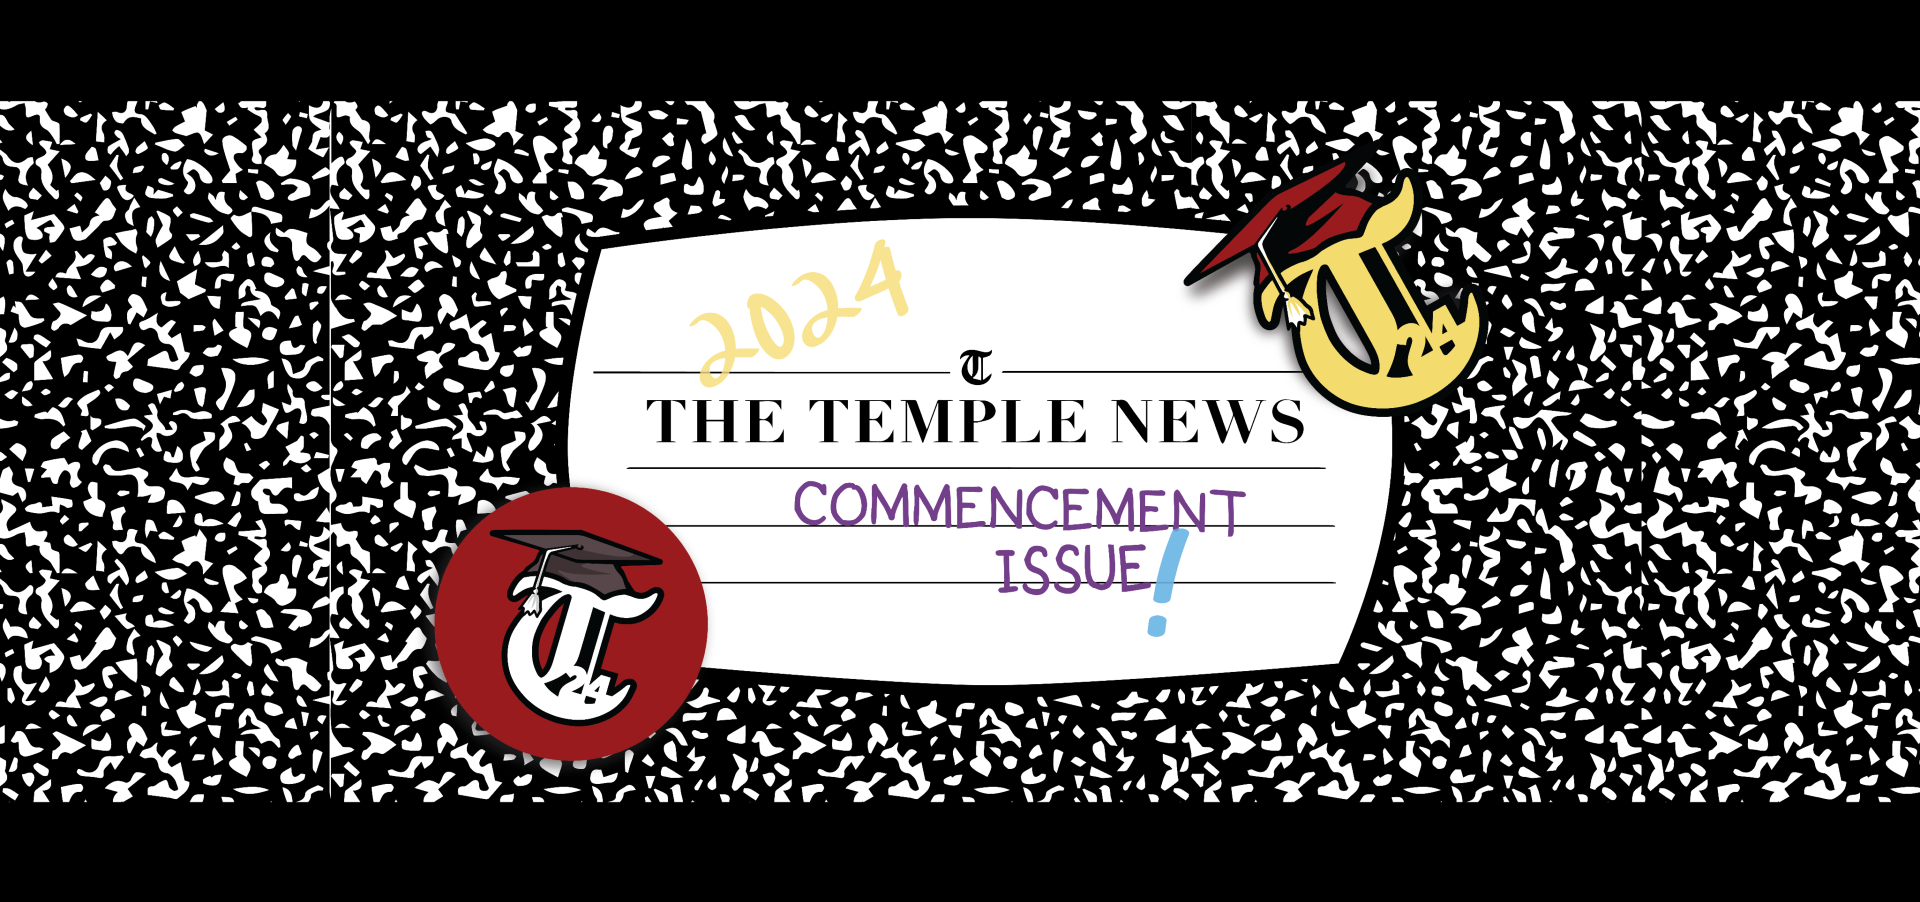 temple-news.com